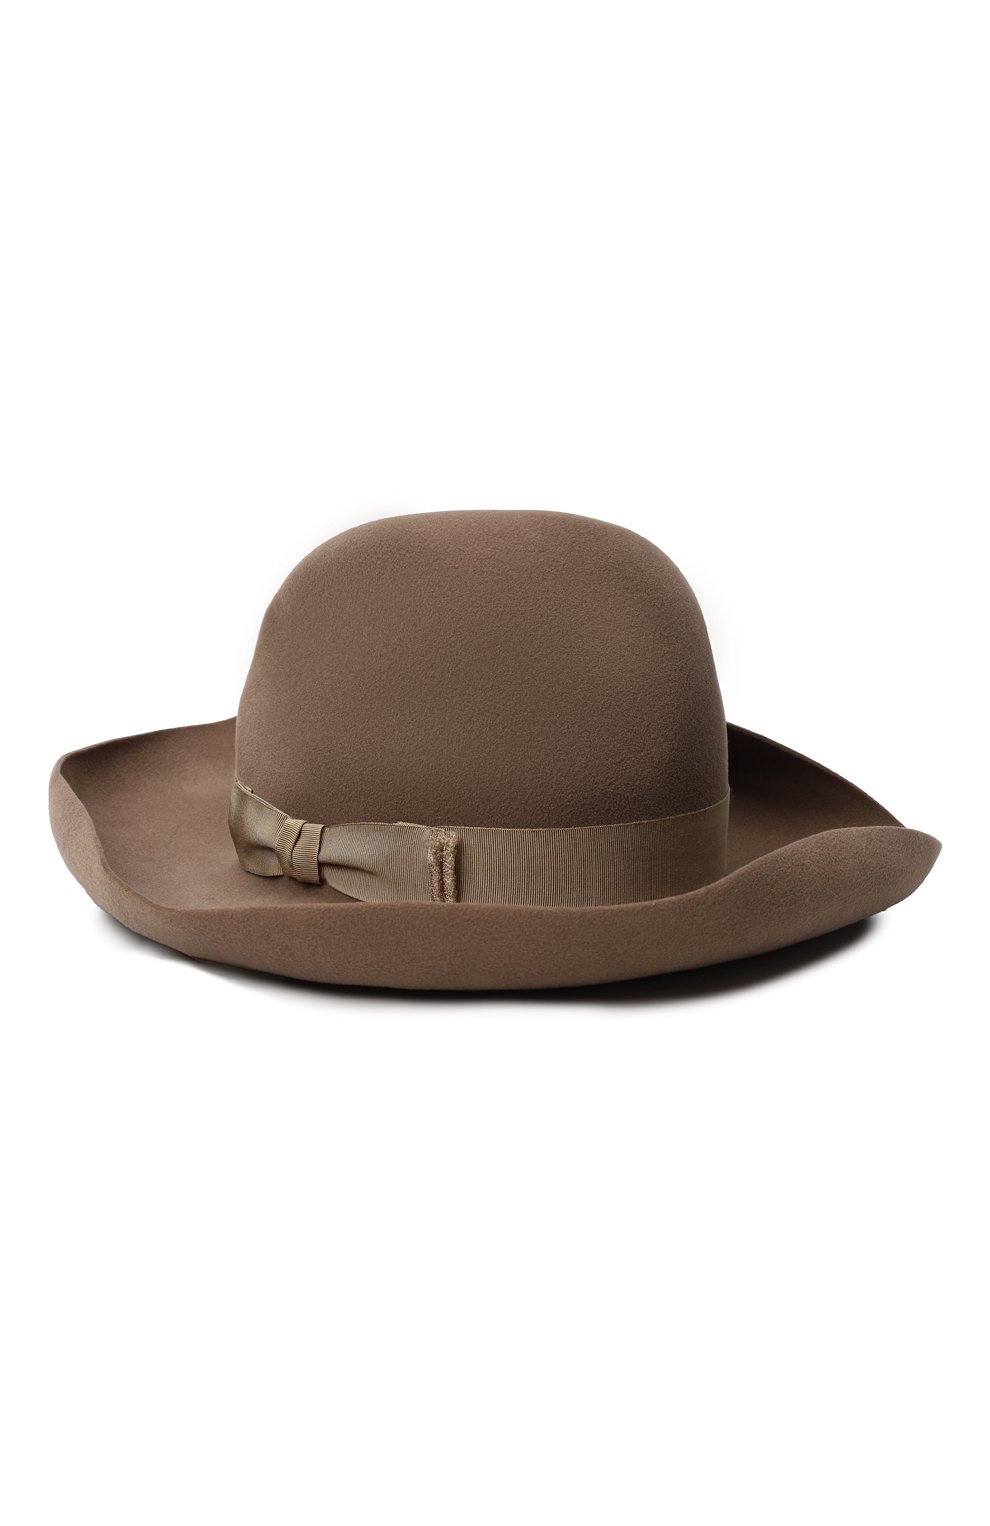 Фетровая шляпа | Ralph Lauren | Коричневый - 1